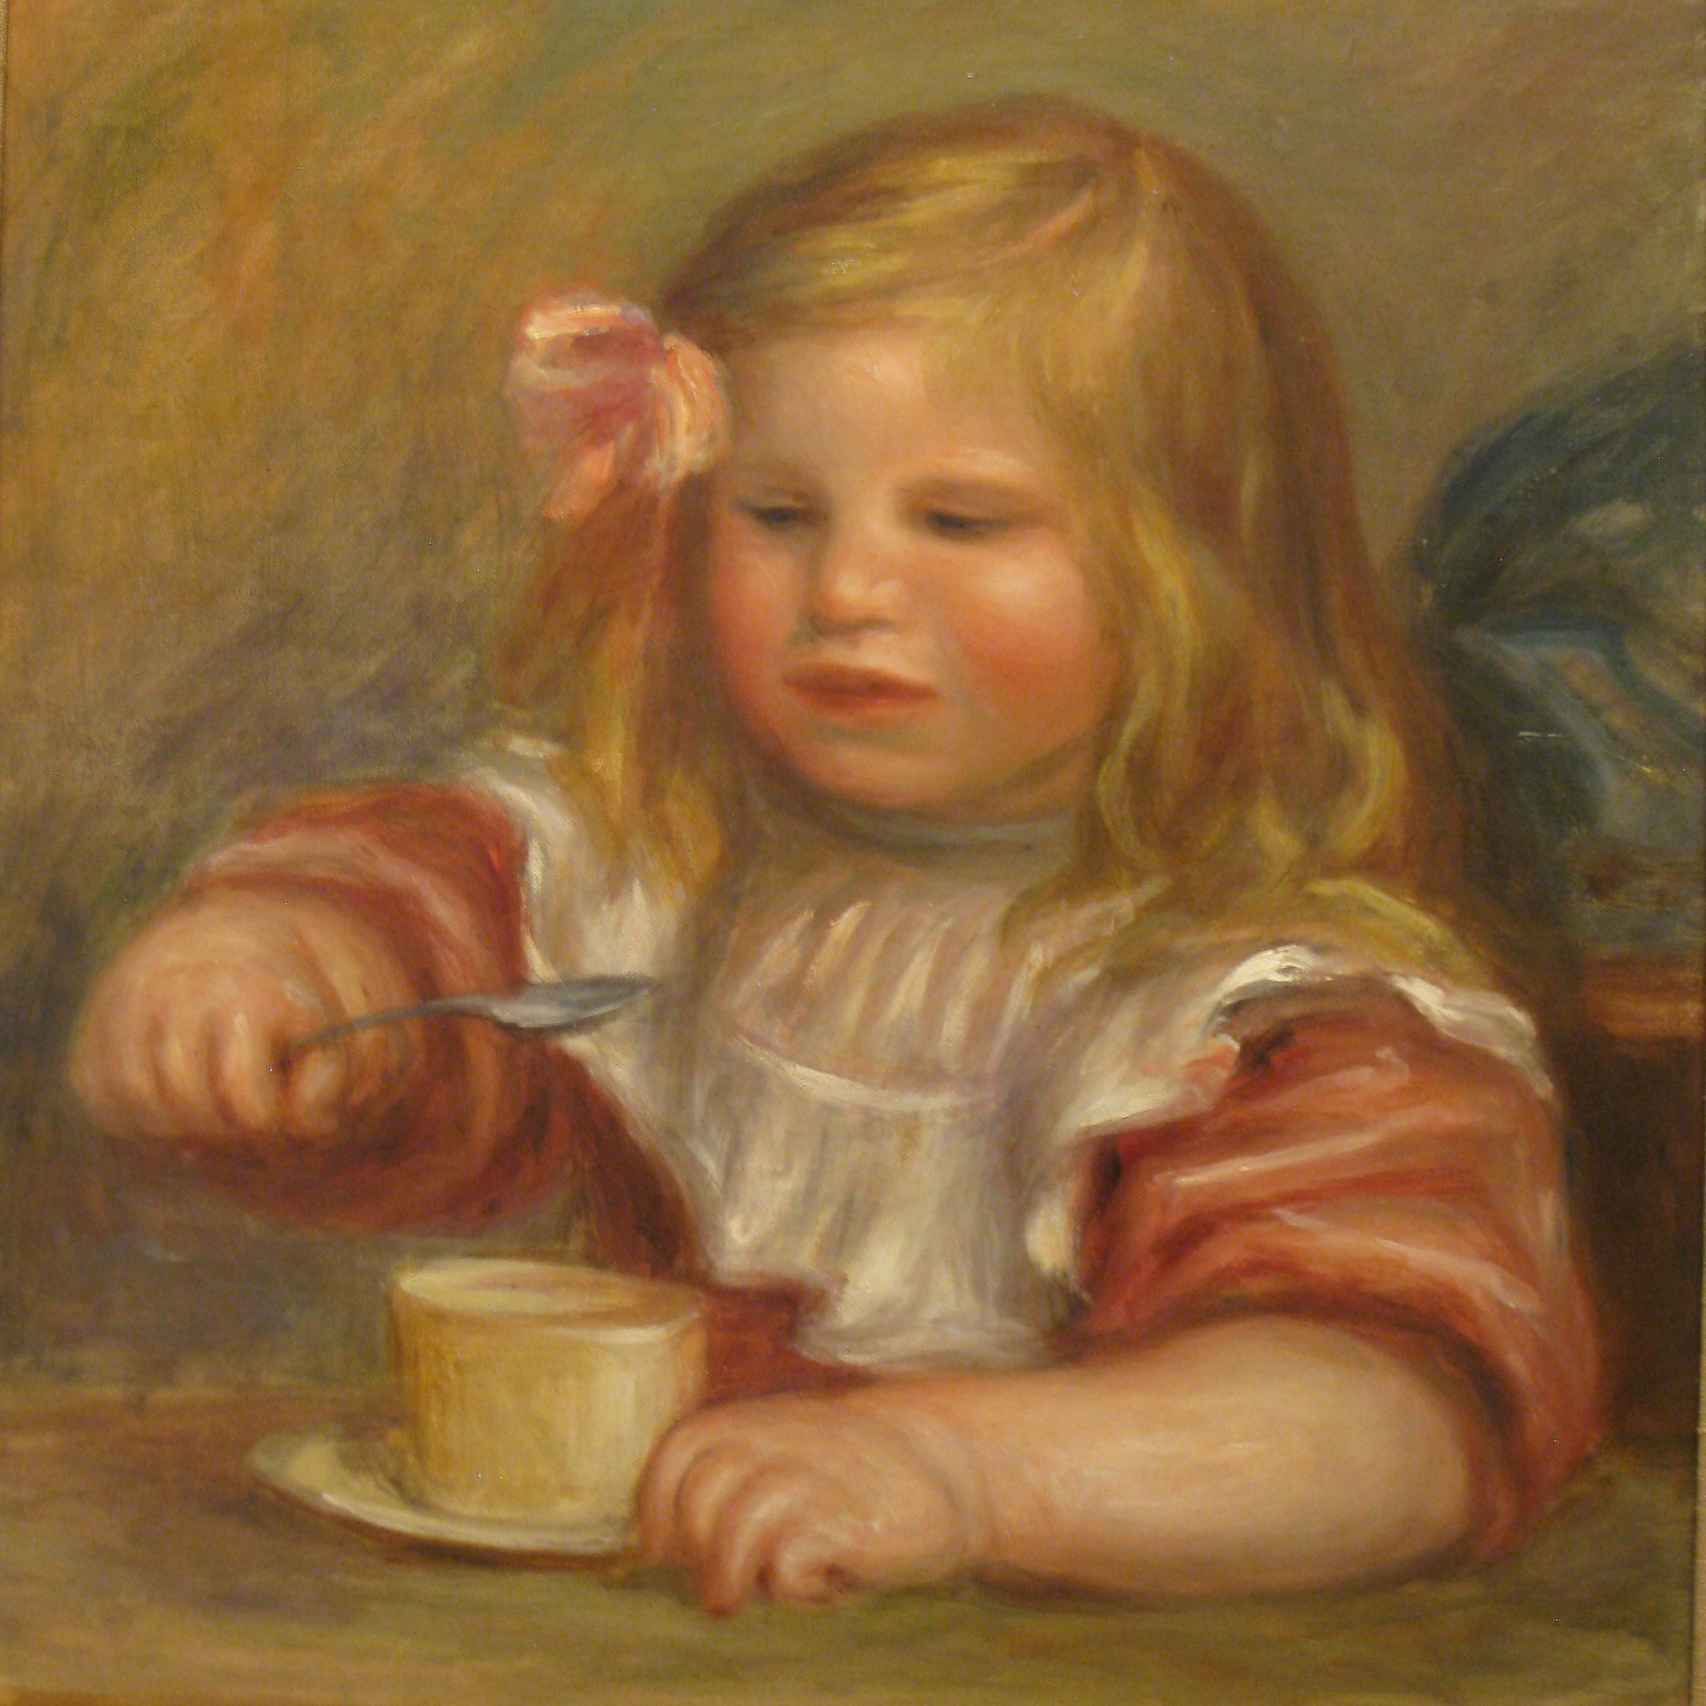 Coco tomando su sopa, de 1905. Sí, Renoir.